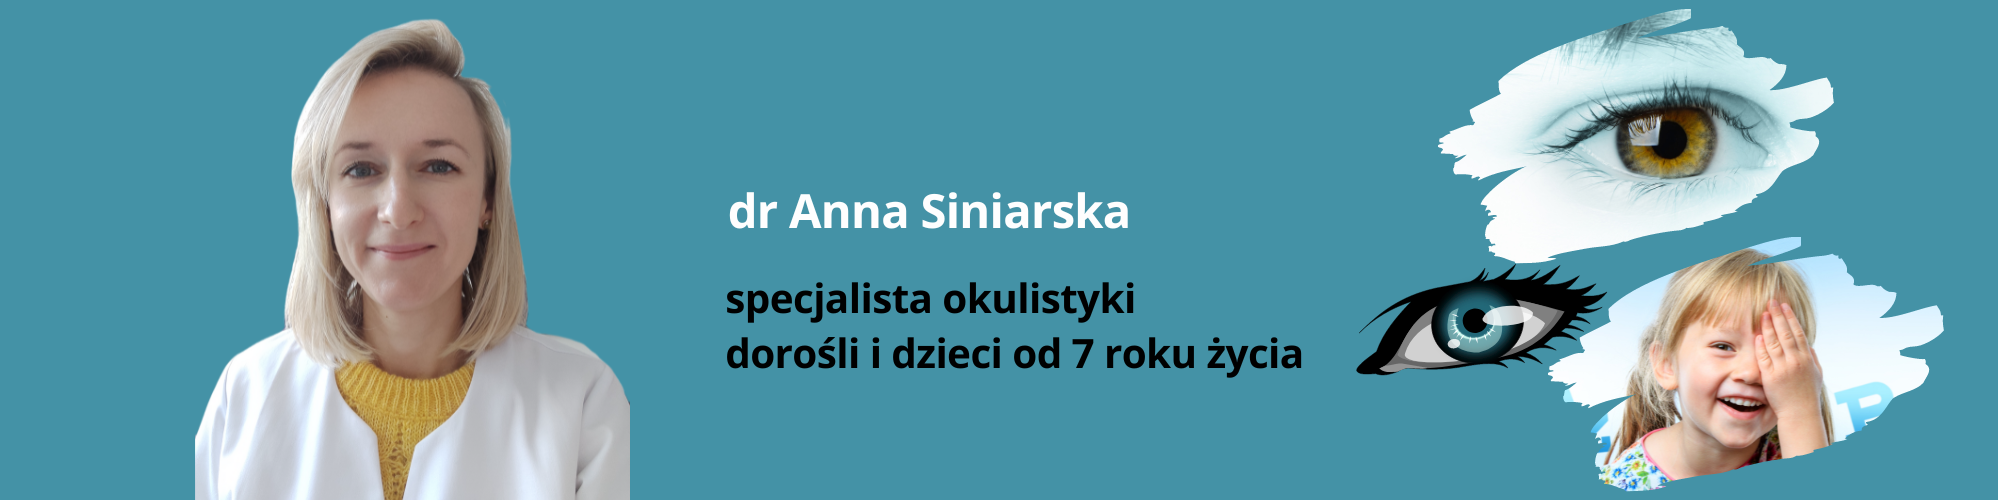 okulista - specjalista okulistyki - dr. Anna Siniarska - cmkasprzaka.pl